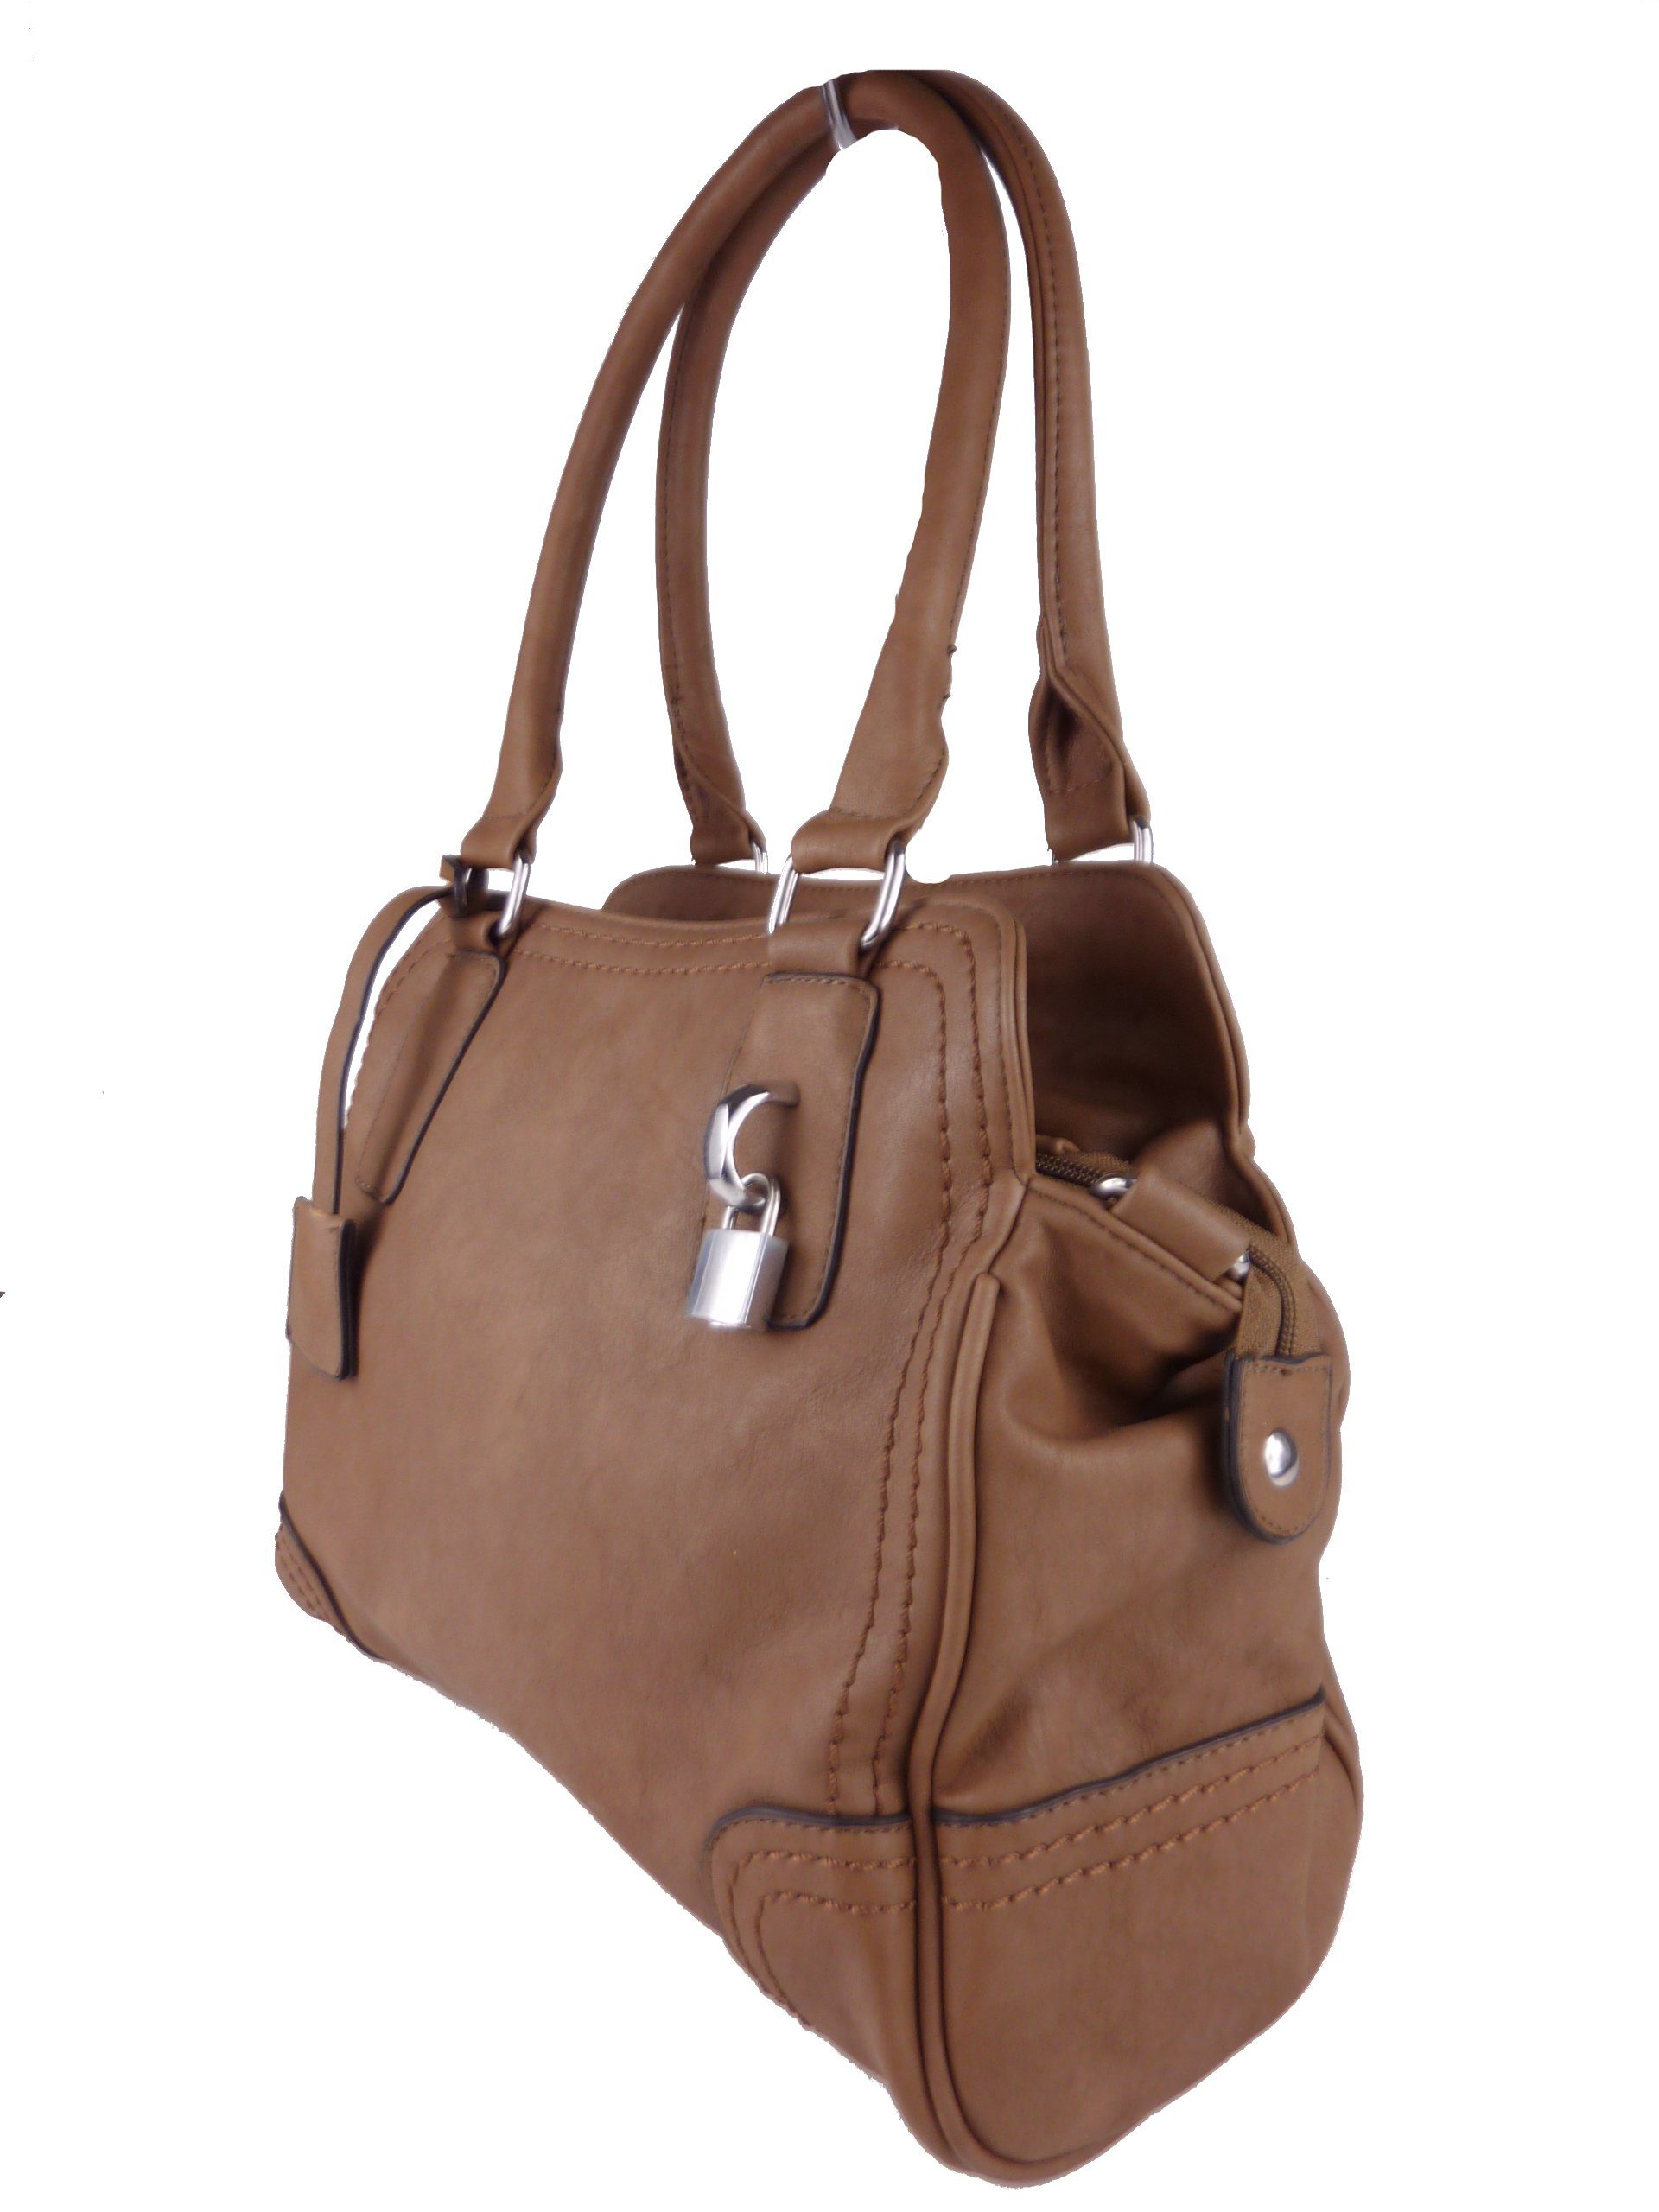 khaki Handtasche tote bag, elegante Handtasche klassische satchel hobo Schultertasche, Taschen4life C1125,